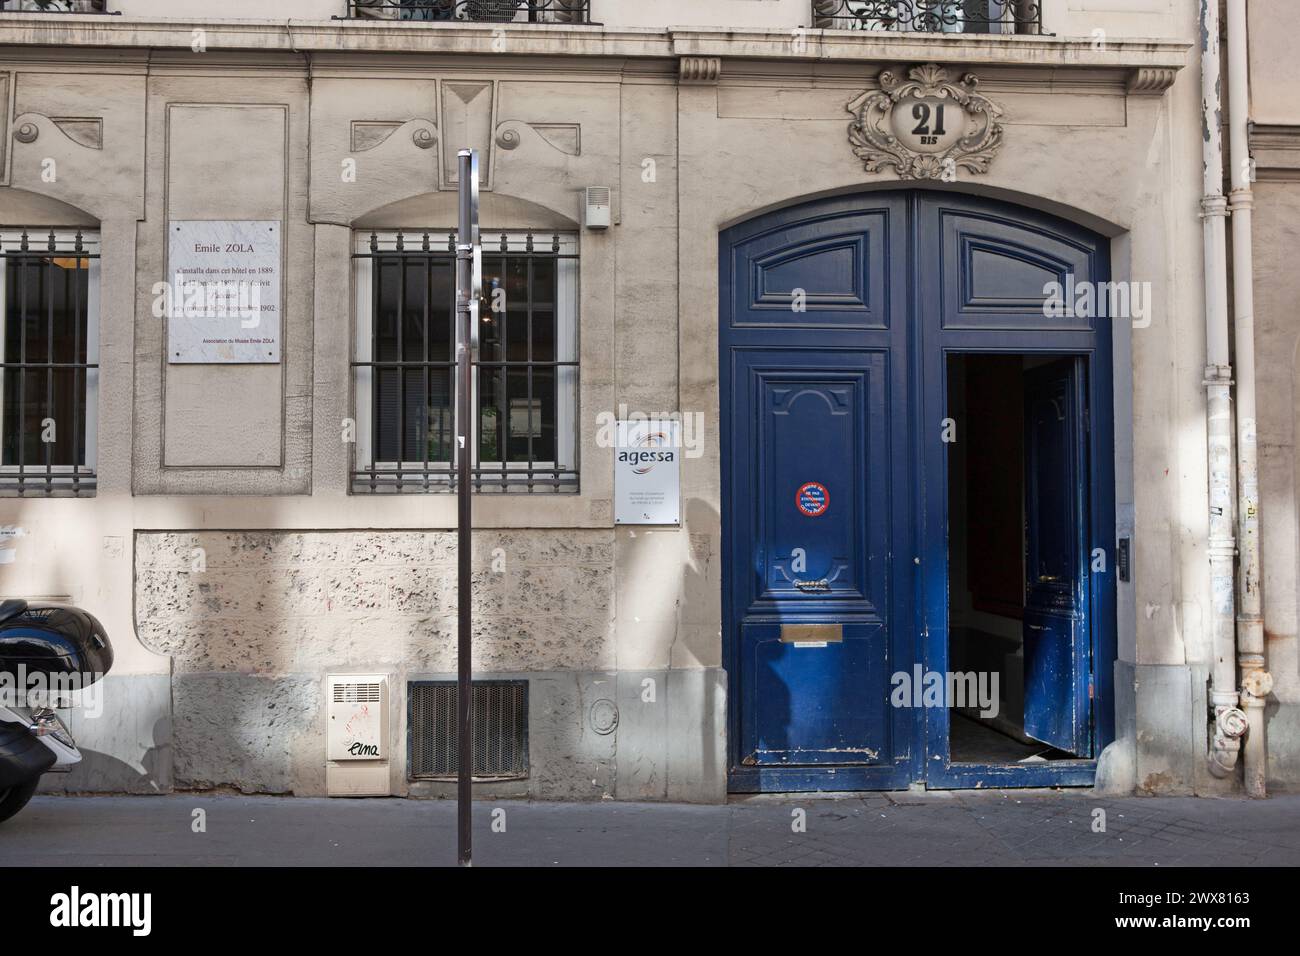 Paris, 9th arrondissement, 21 bis rue de Bruxelles, where French author Emile Zola died, actual siege of the AGESSA company Stock Photo